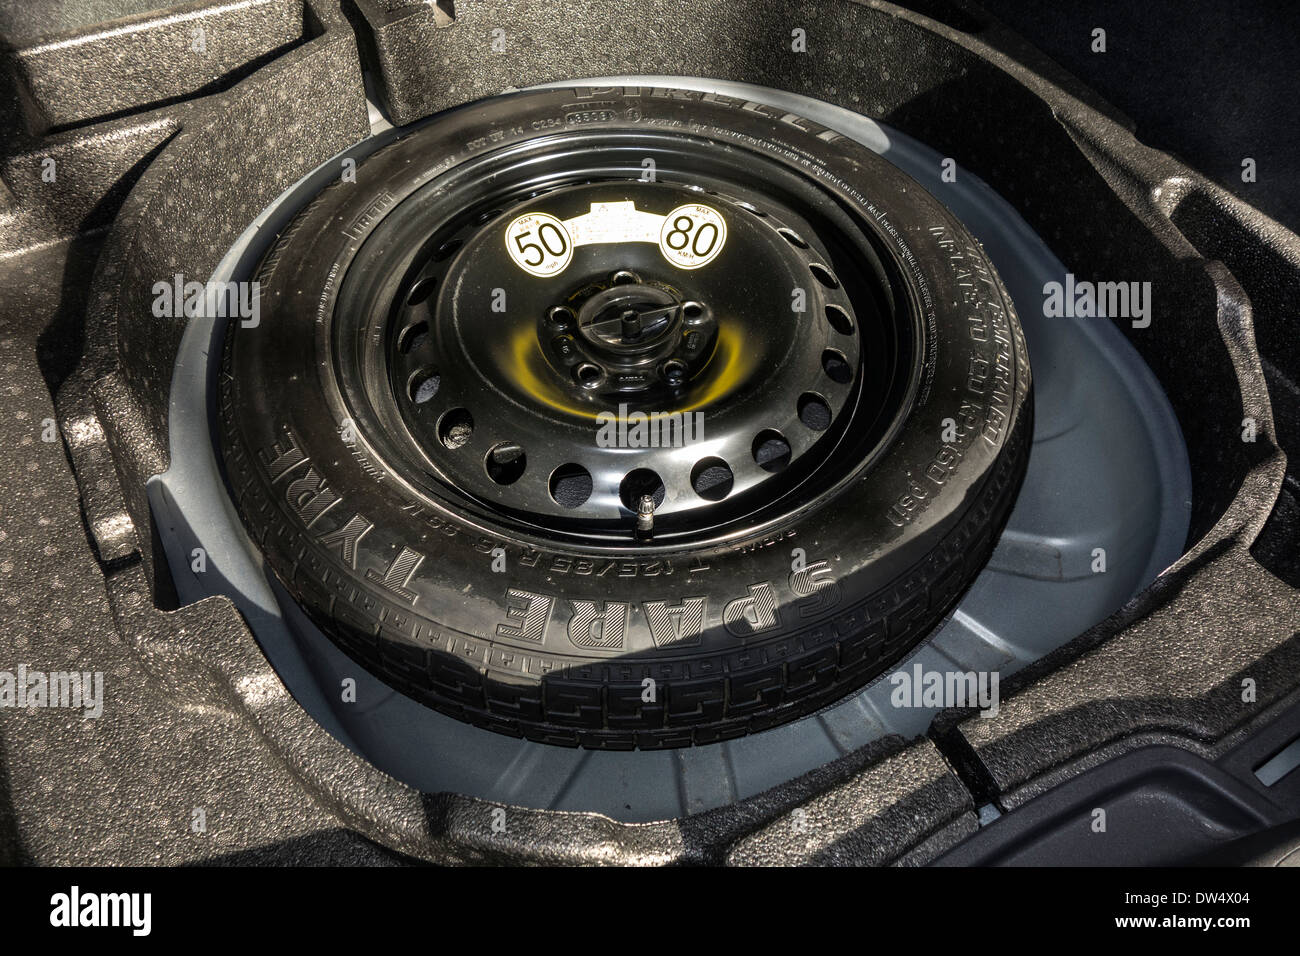 Spazio-saver ruota di scorta nel portabagagli della vettura con un numero limitato di limite di velocità massima di 50 km/h / 80 km/h Foto Stock